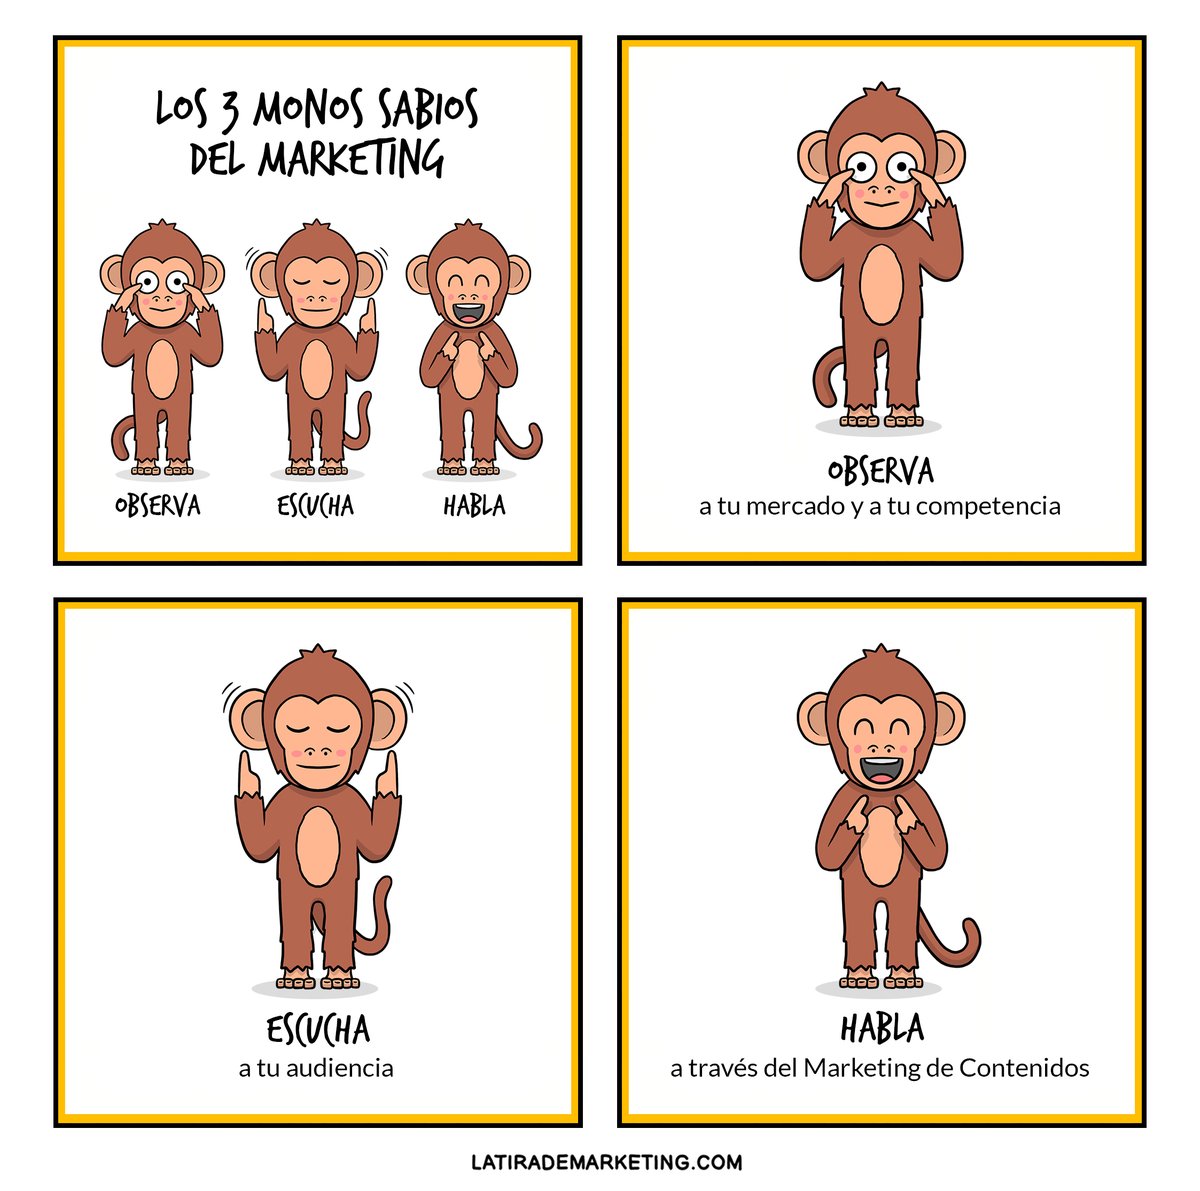 Los tres monos sabios 🙈🙉🙊, Sócrates 🤔 y las claves del marketing de contenidos 🔑🔑🔑. mtr.cool/petvtakmcp #MarketingdeContenidos #MarketingIlustrado